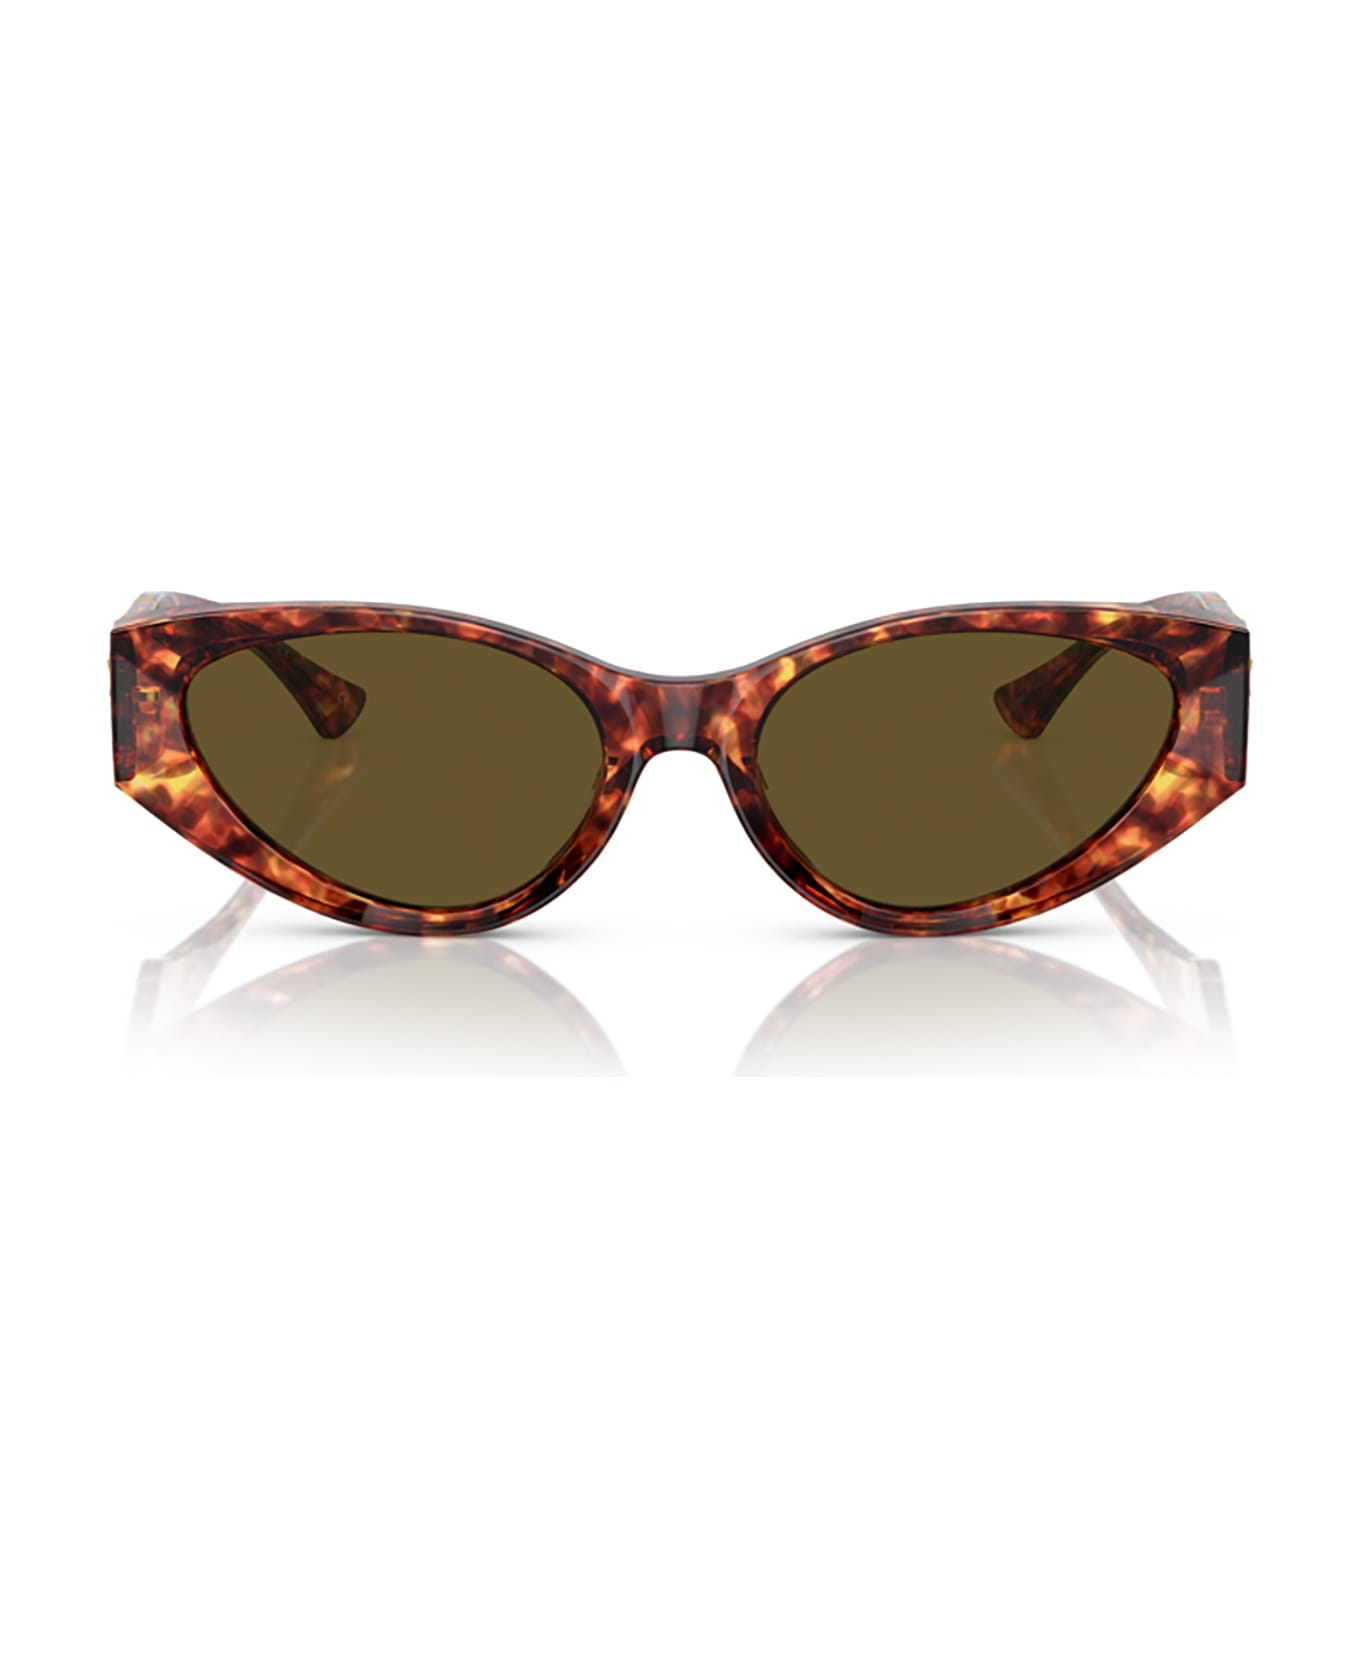 Versace Eyewear Ve4454 Havana Sunglasses - Havana